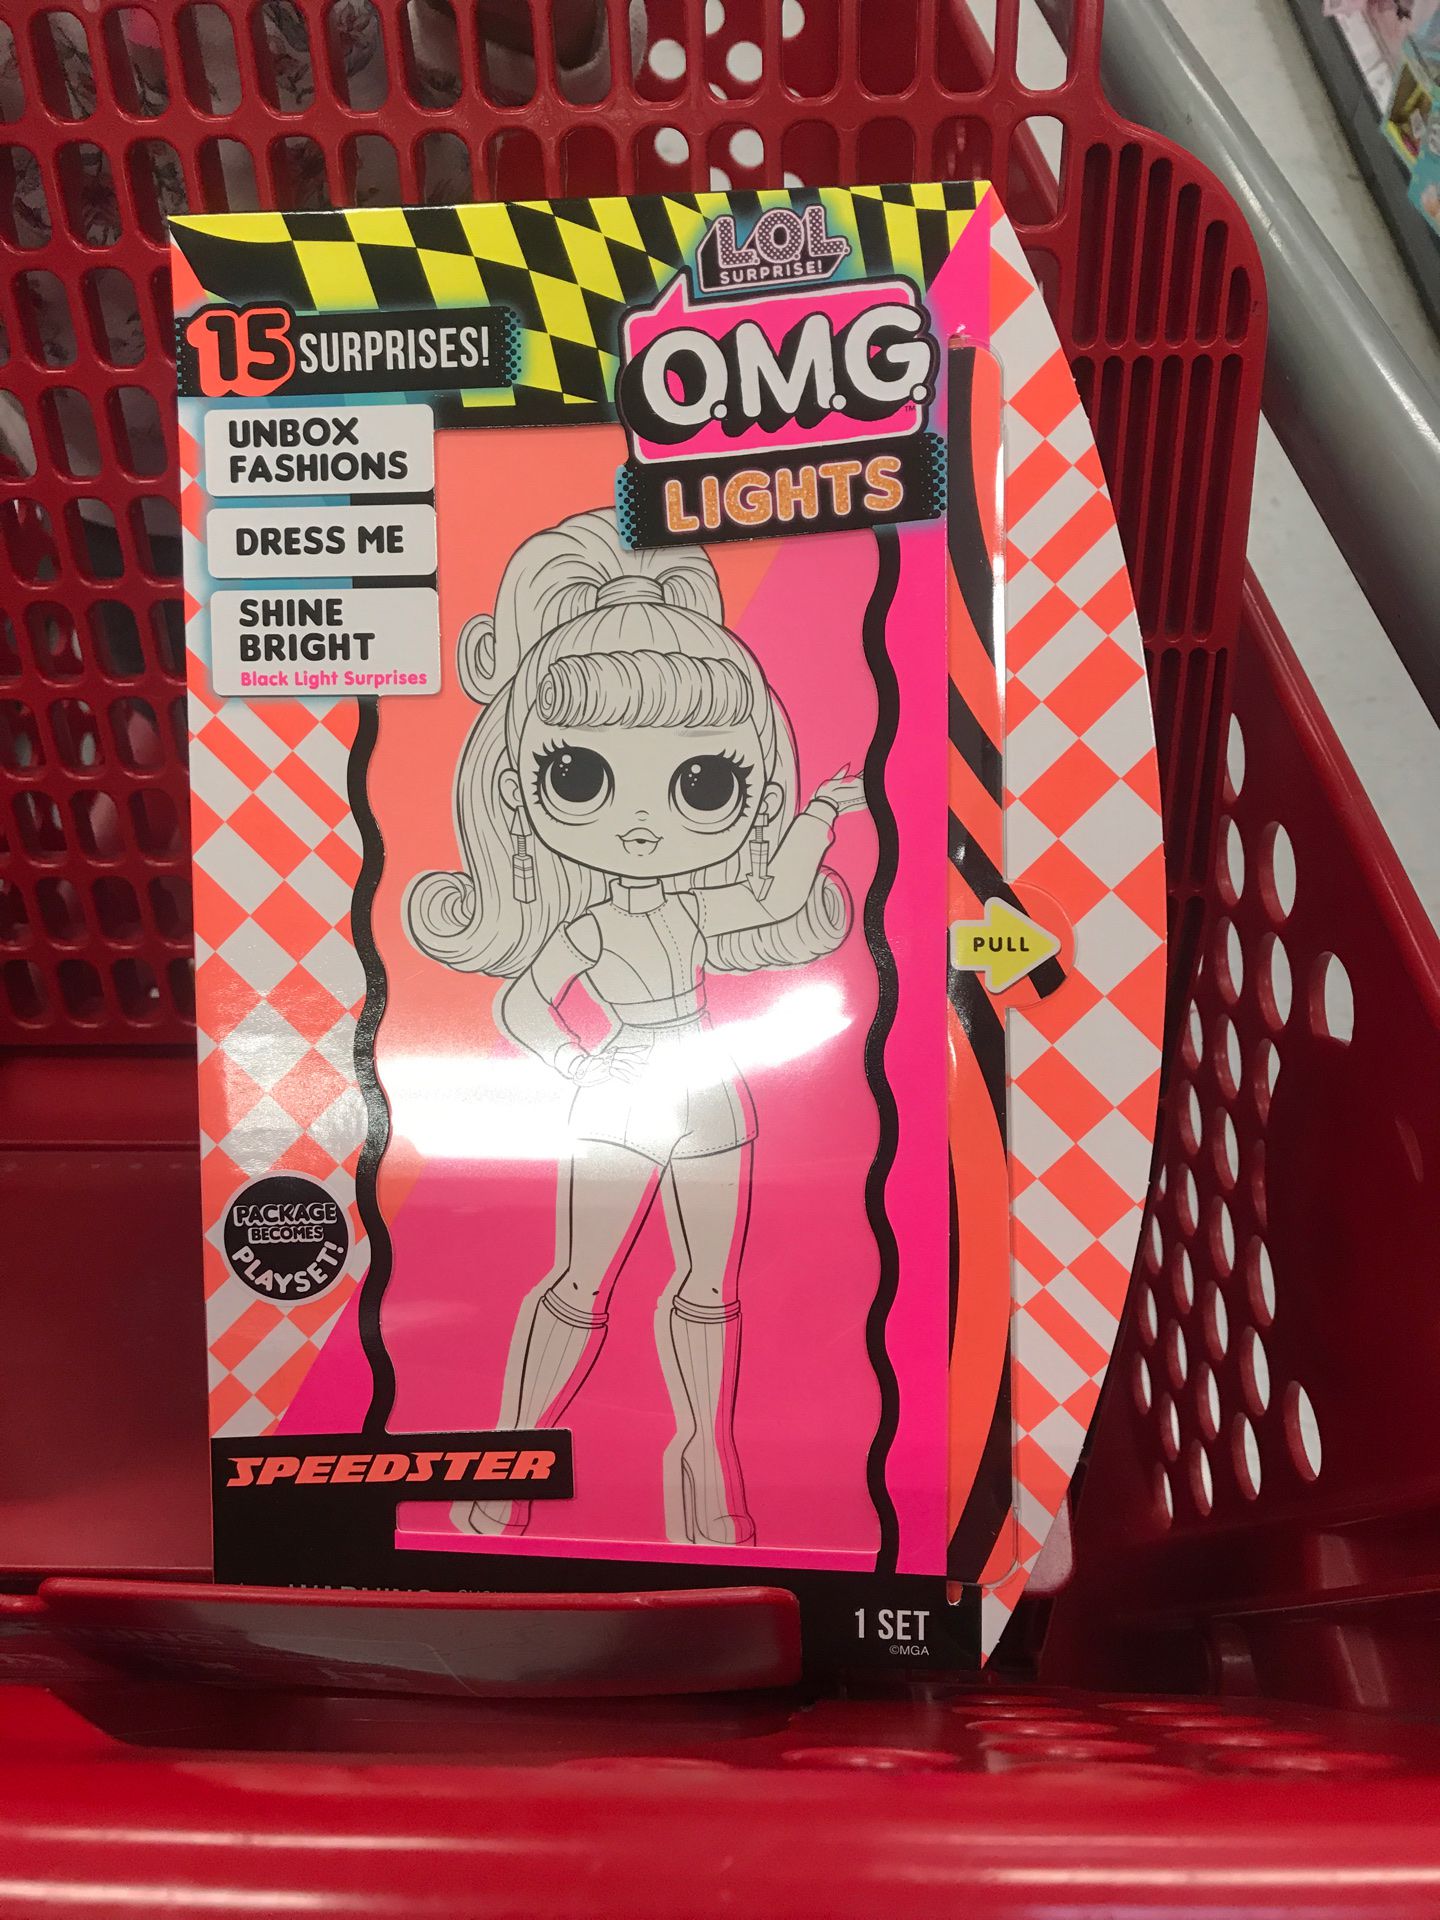 Lol surprise omg lights doll